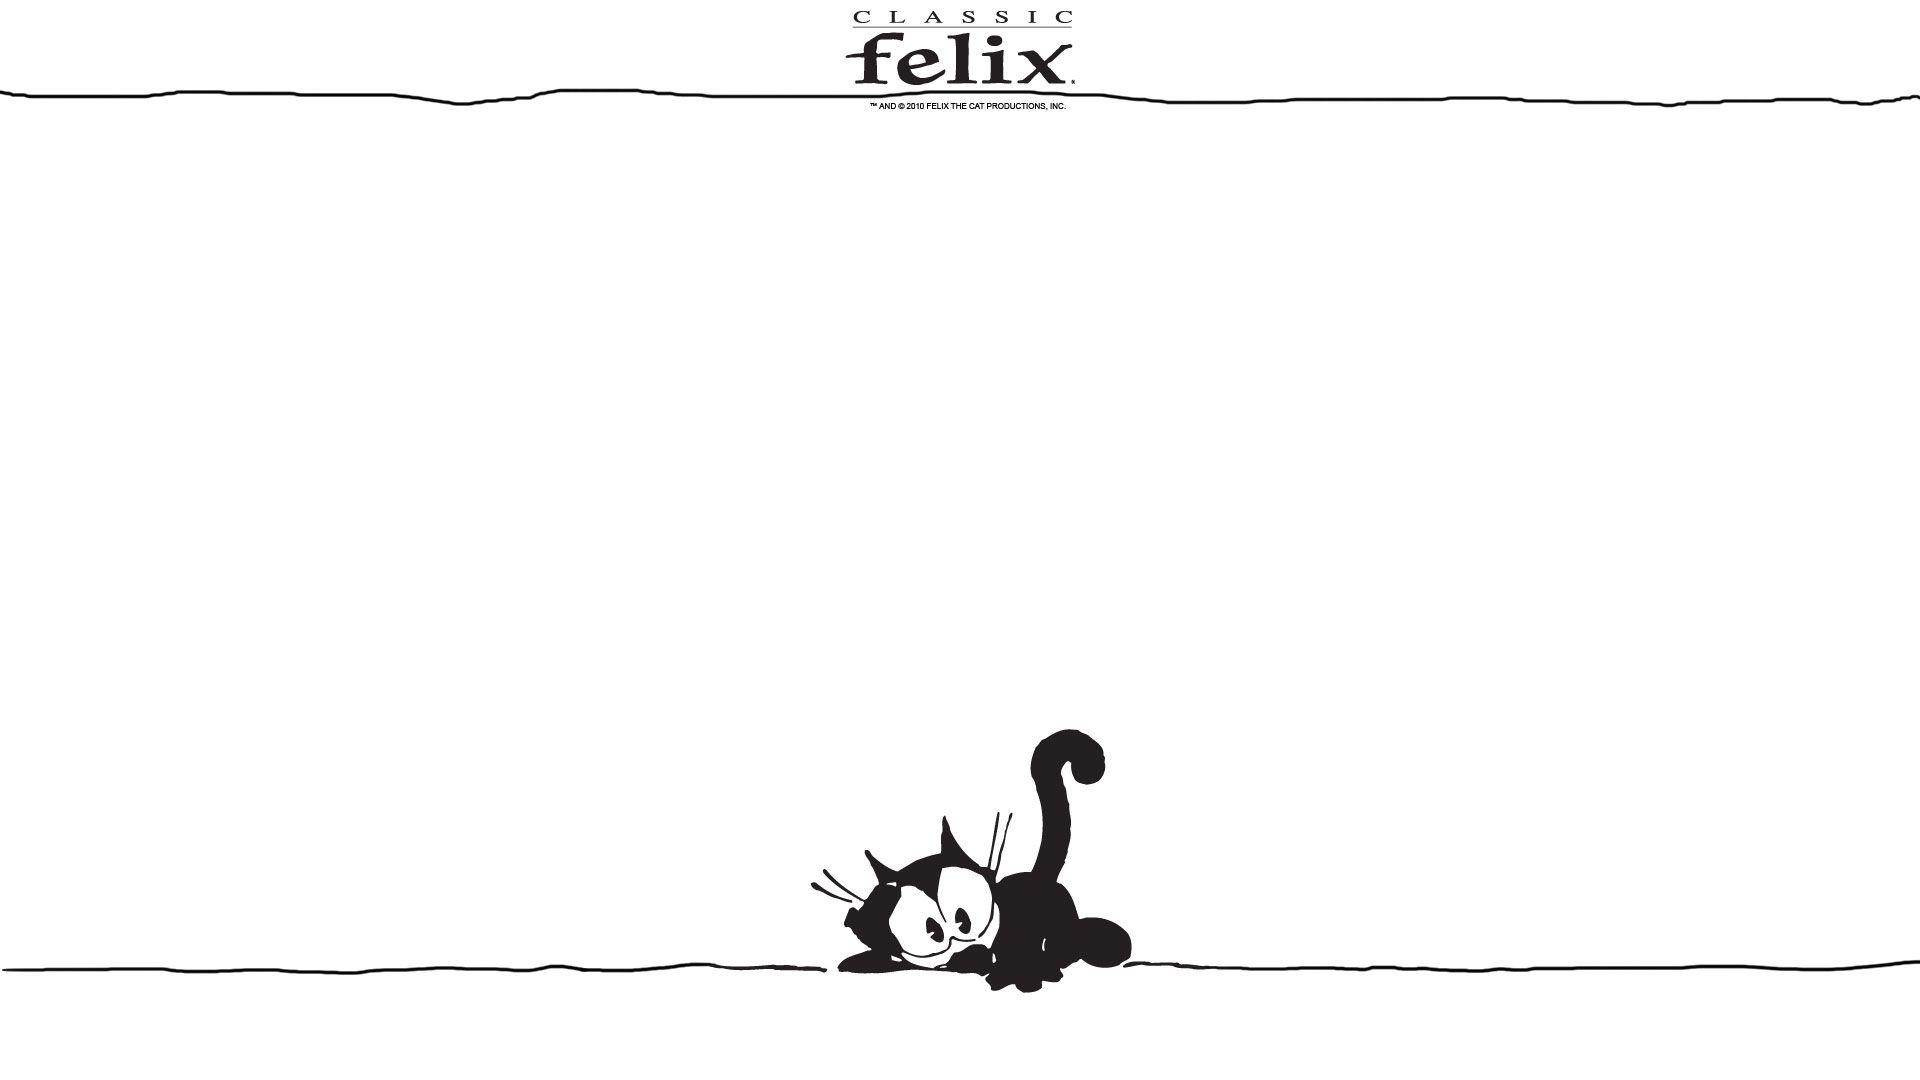 Felix The Cat Wallpapers - Wallpaper Cave